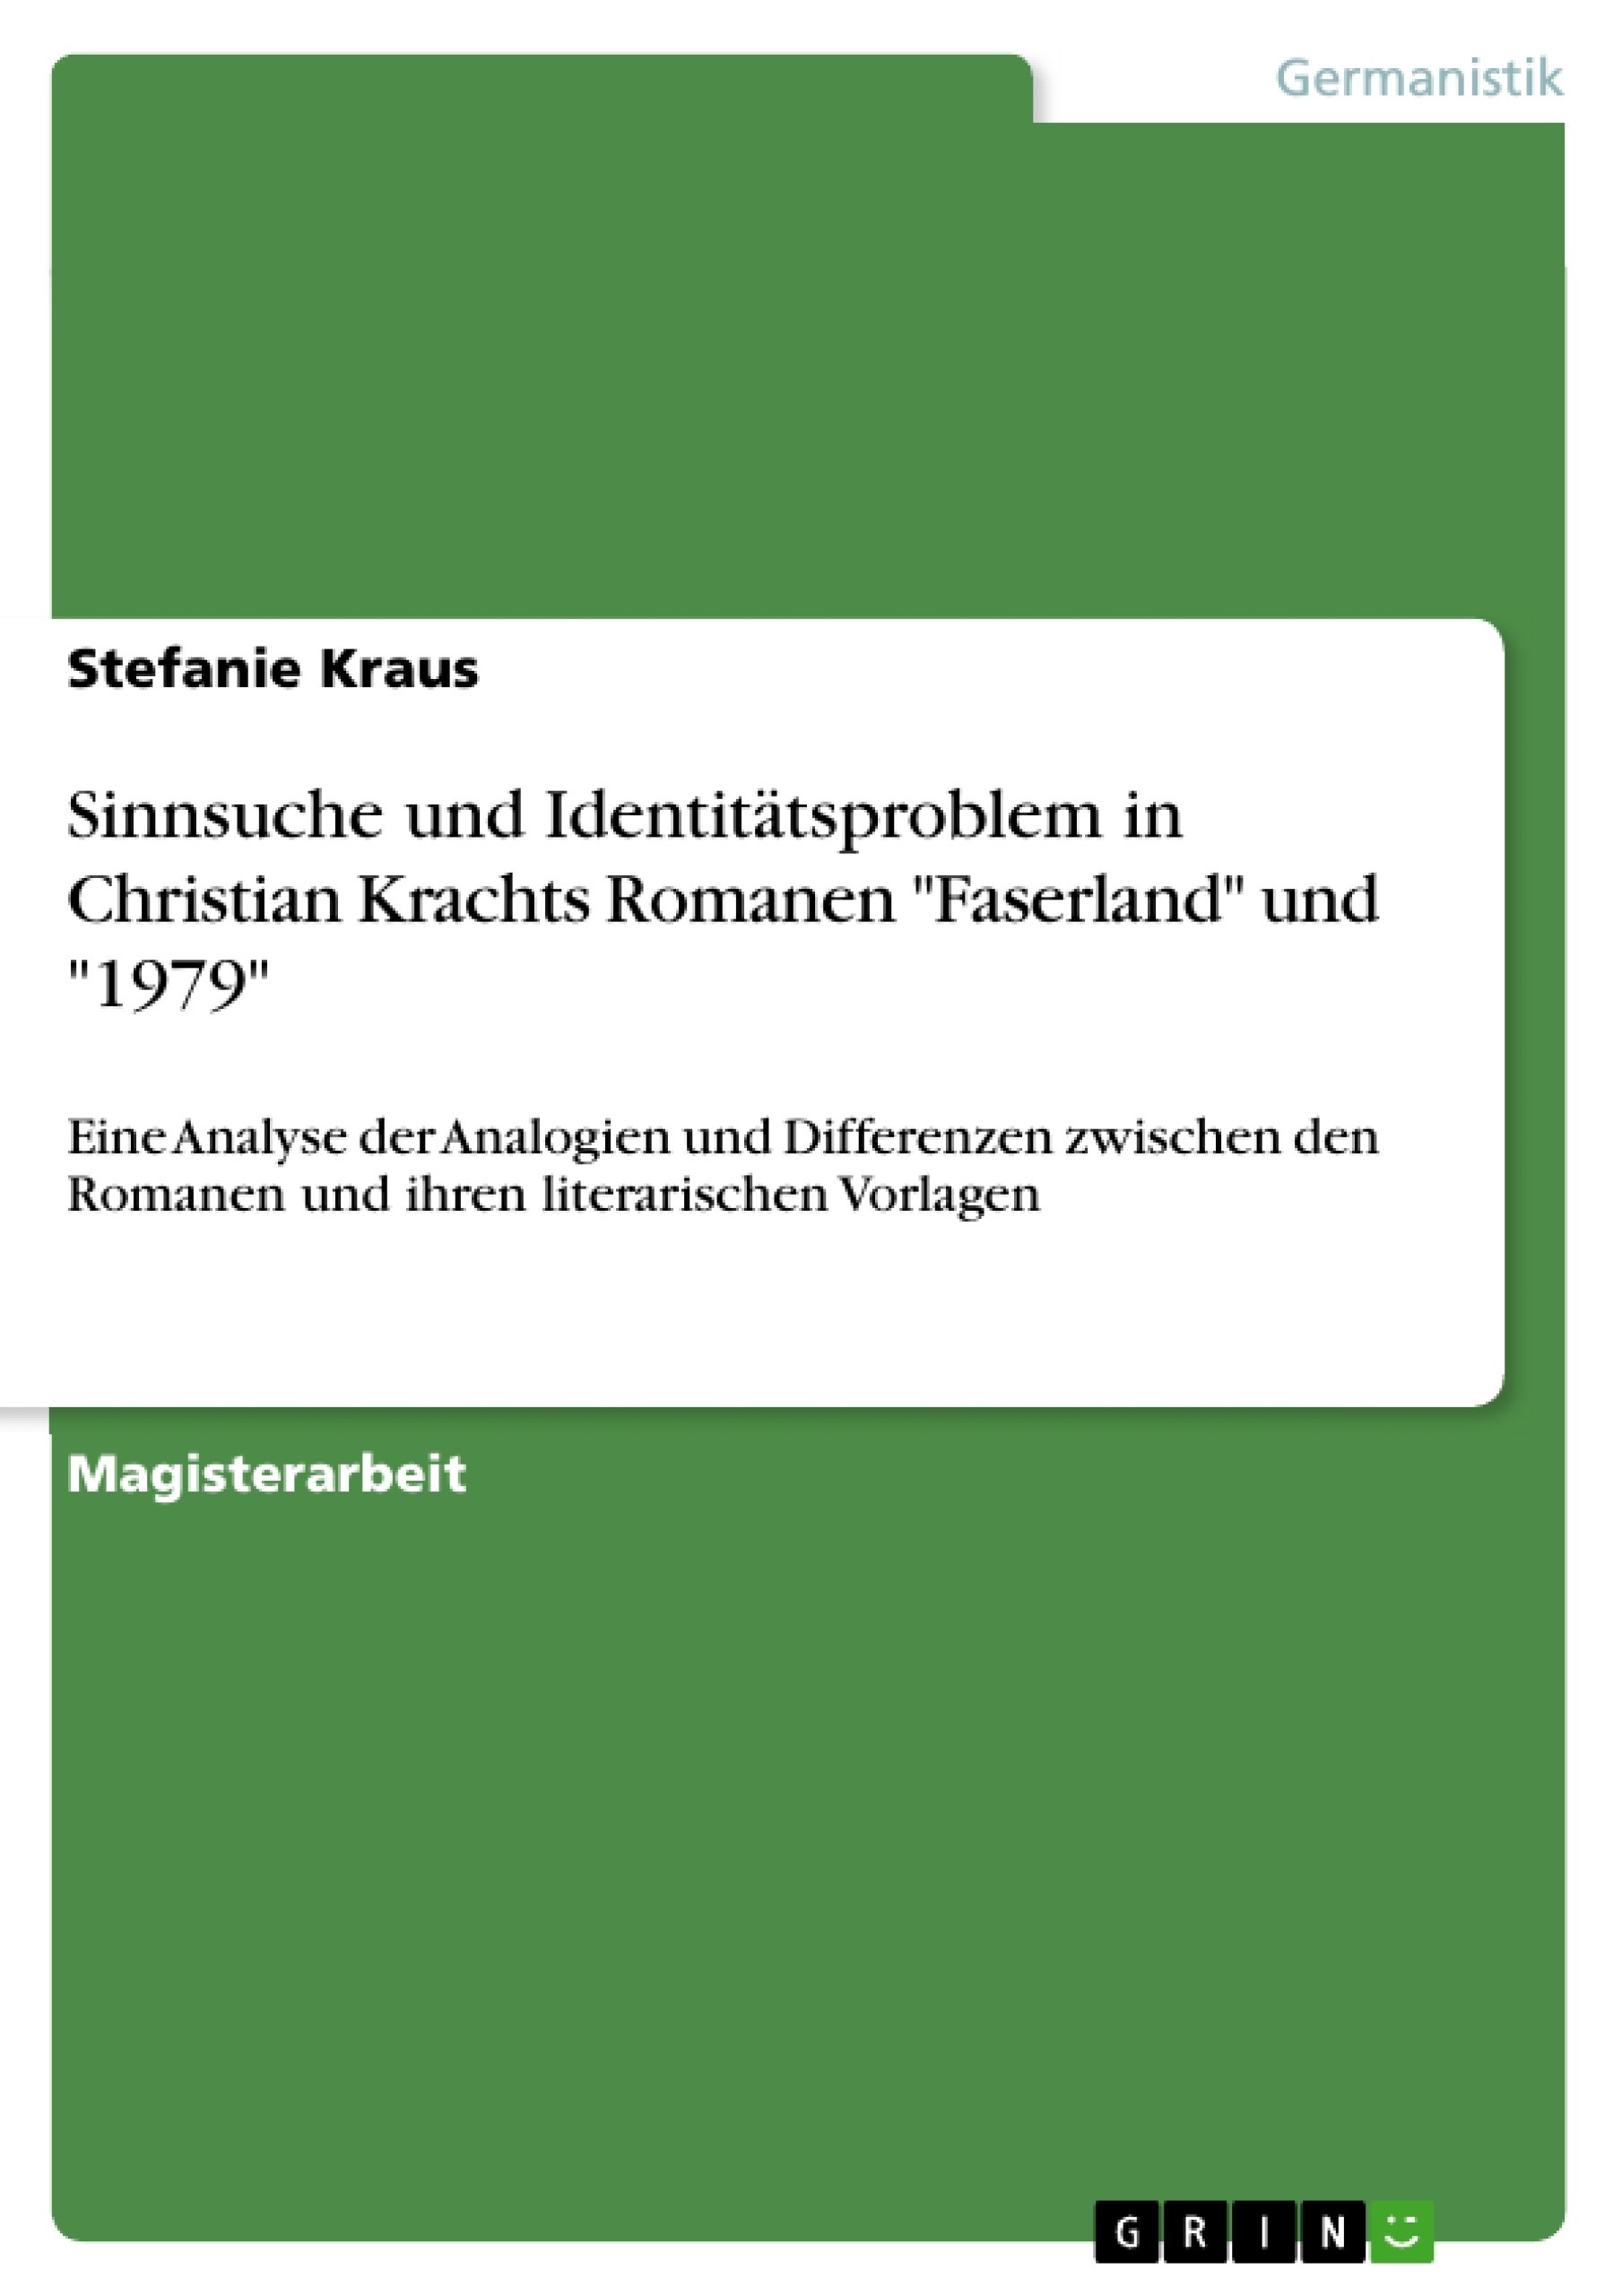 Title: Sinnsuche und Identitätsproblem in Christian Krachts Romanen "Faserland" und "1979"